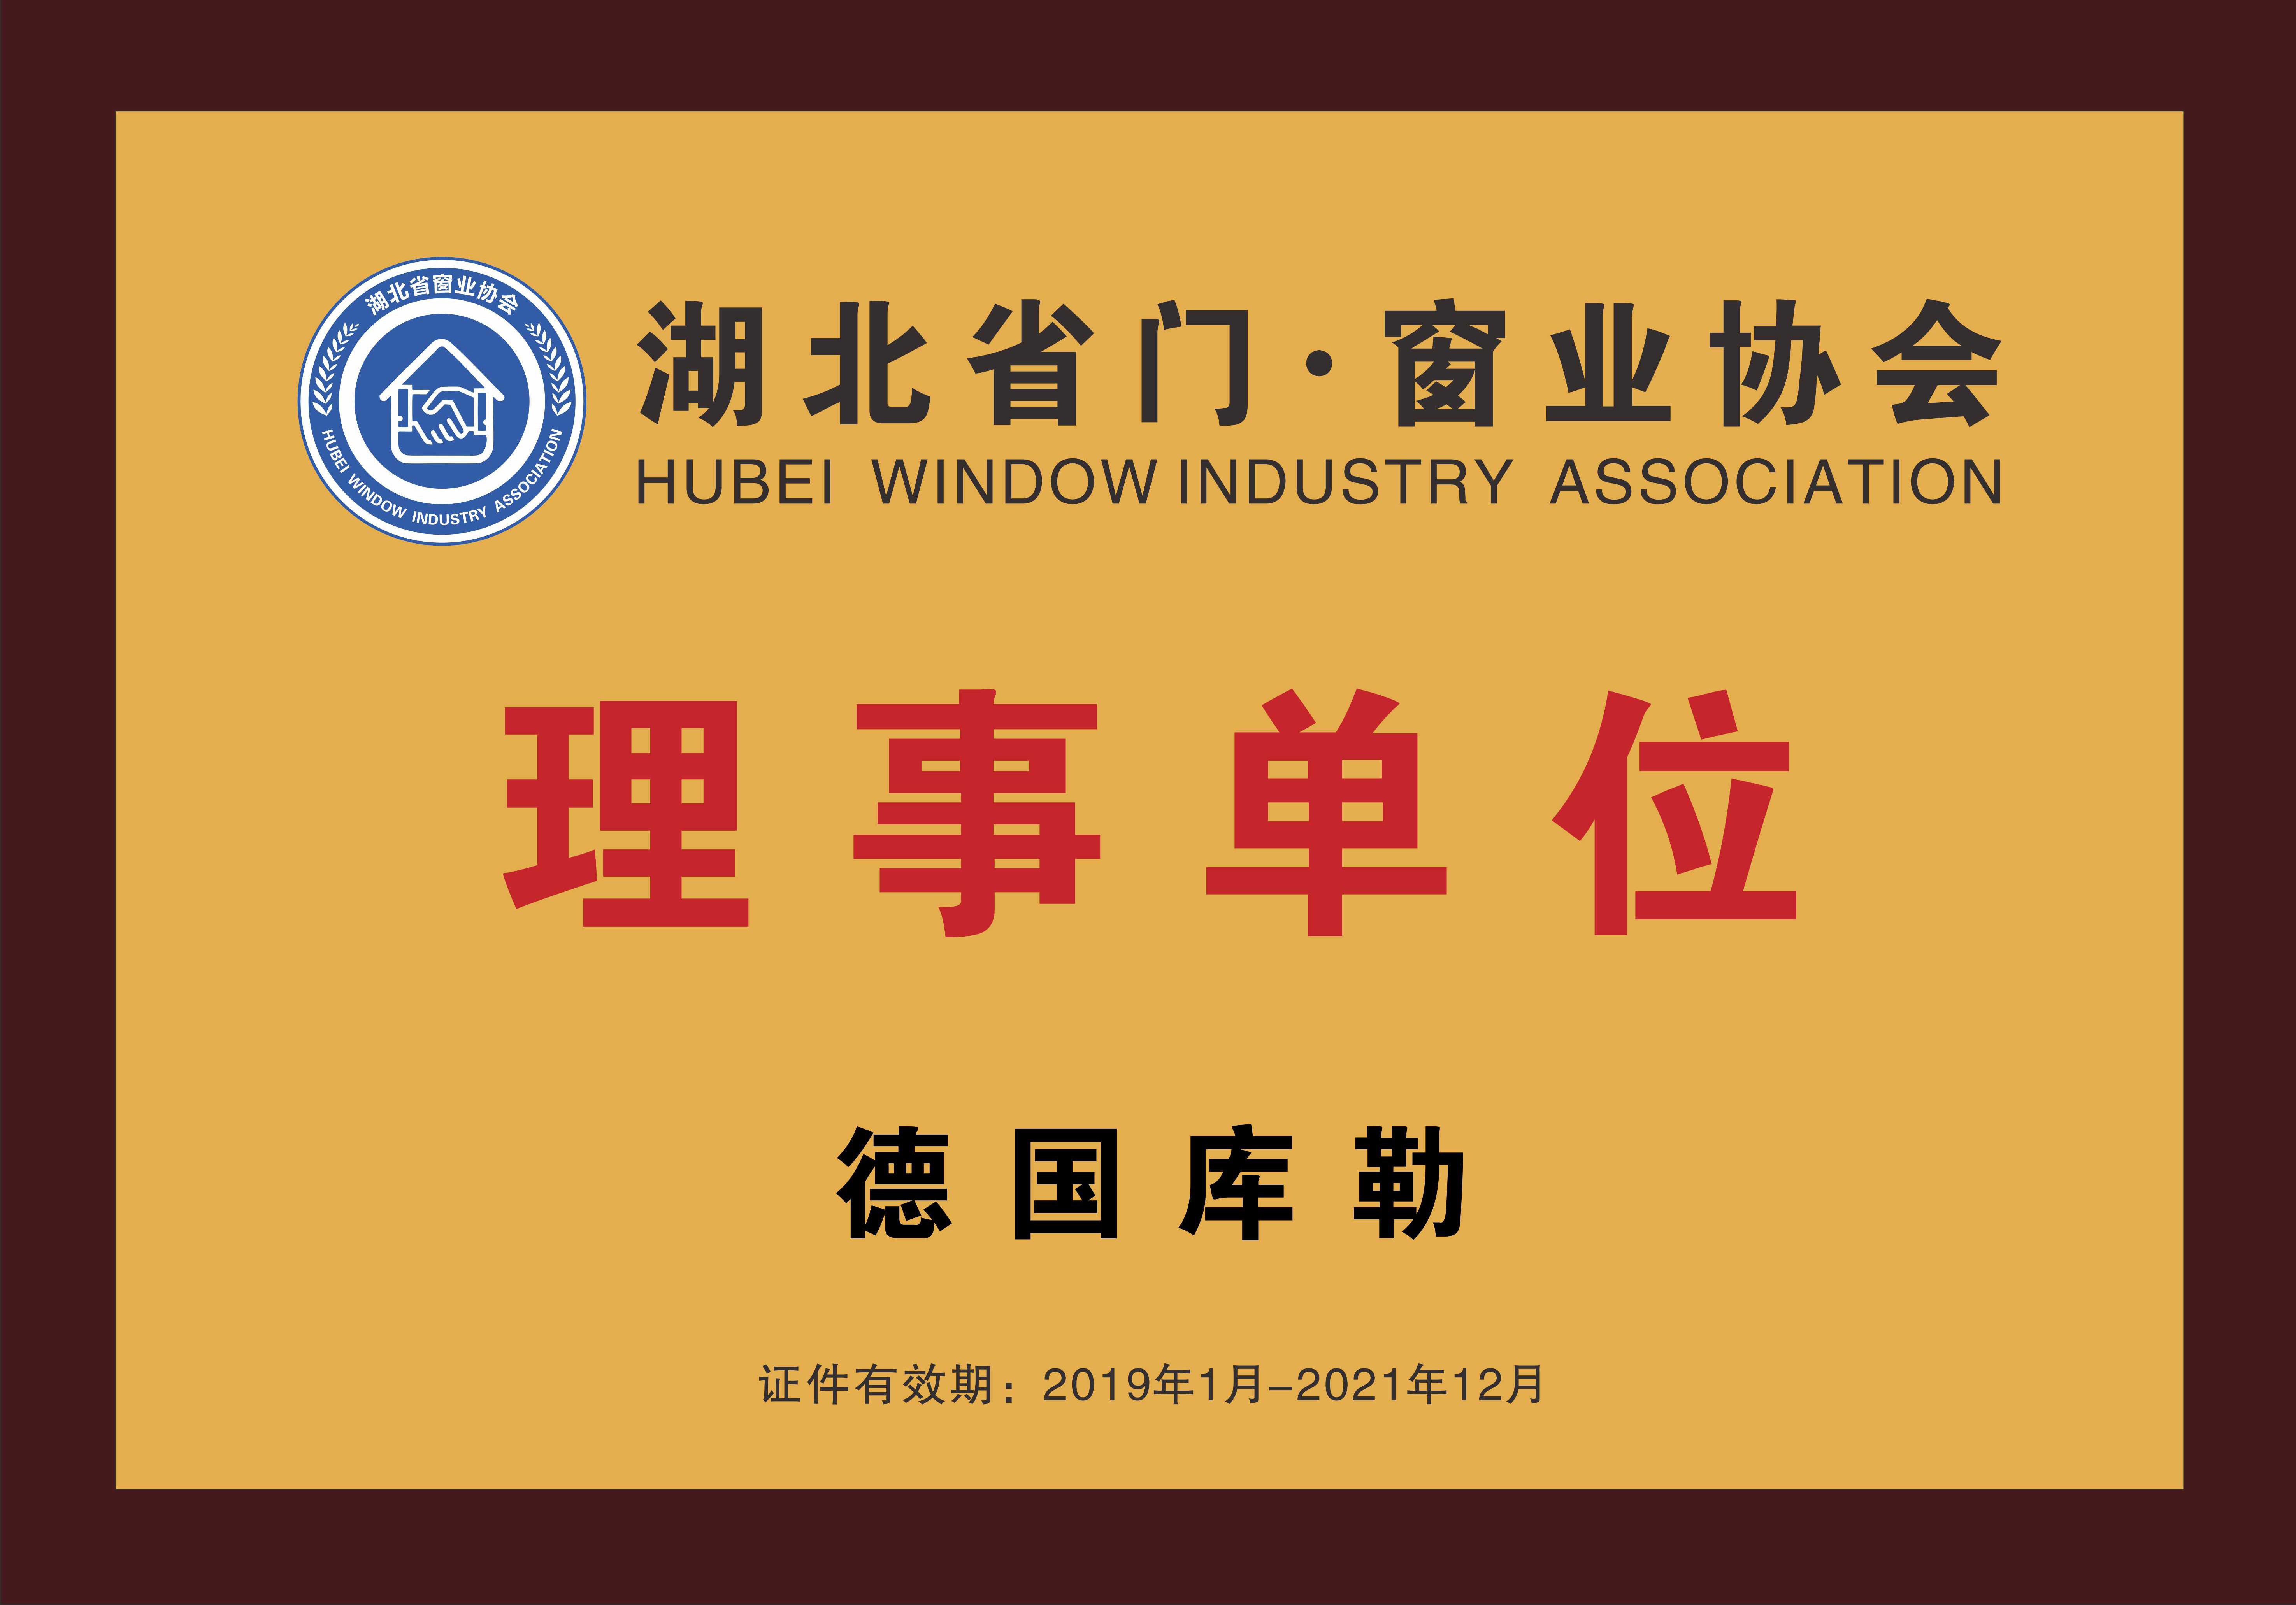 Director unit of Hubei door and window industry association